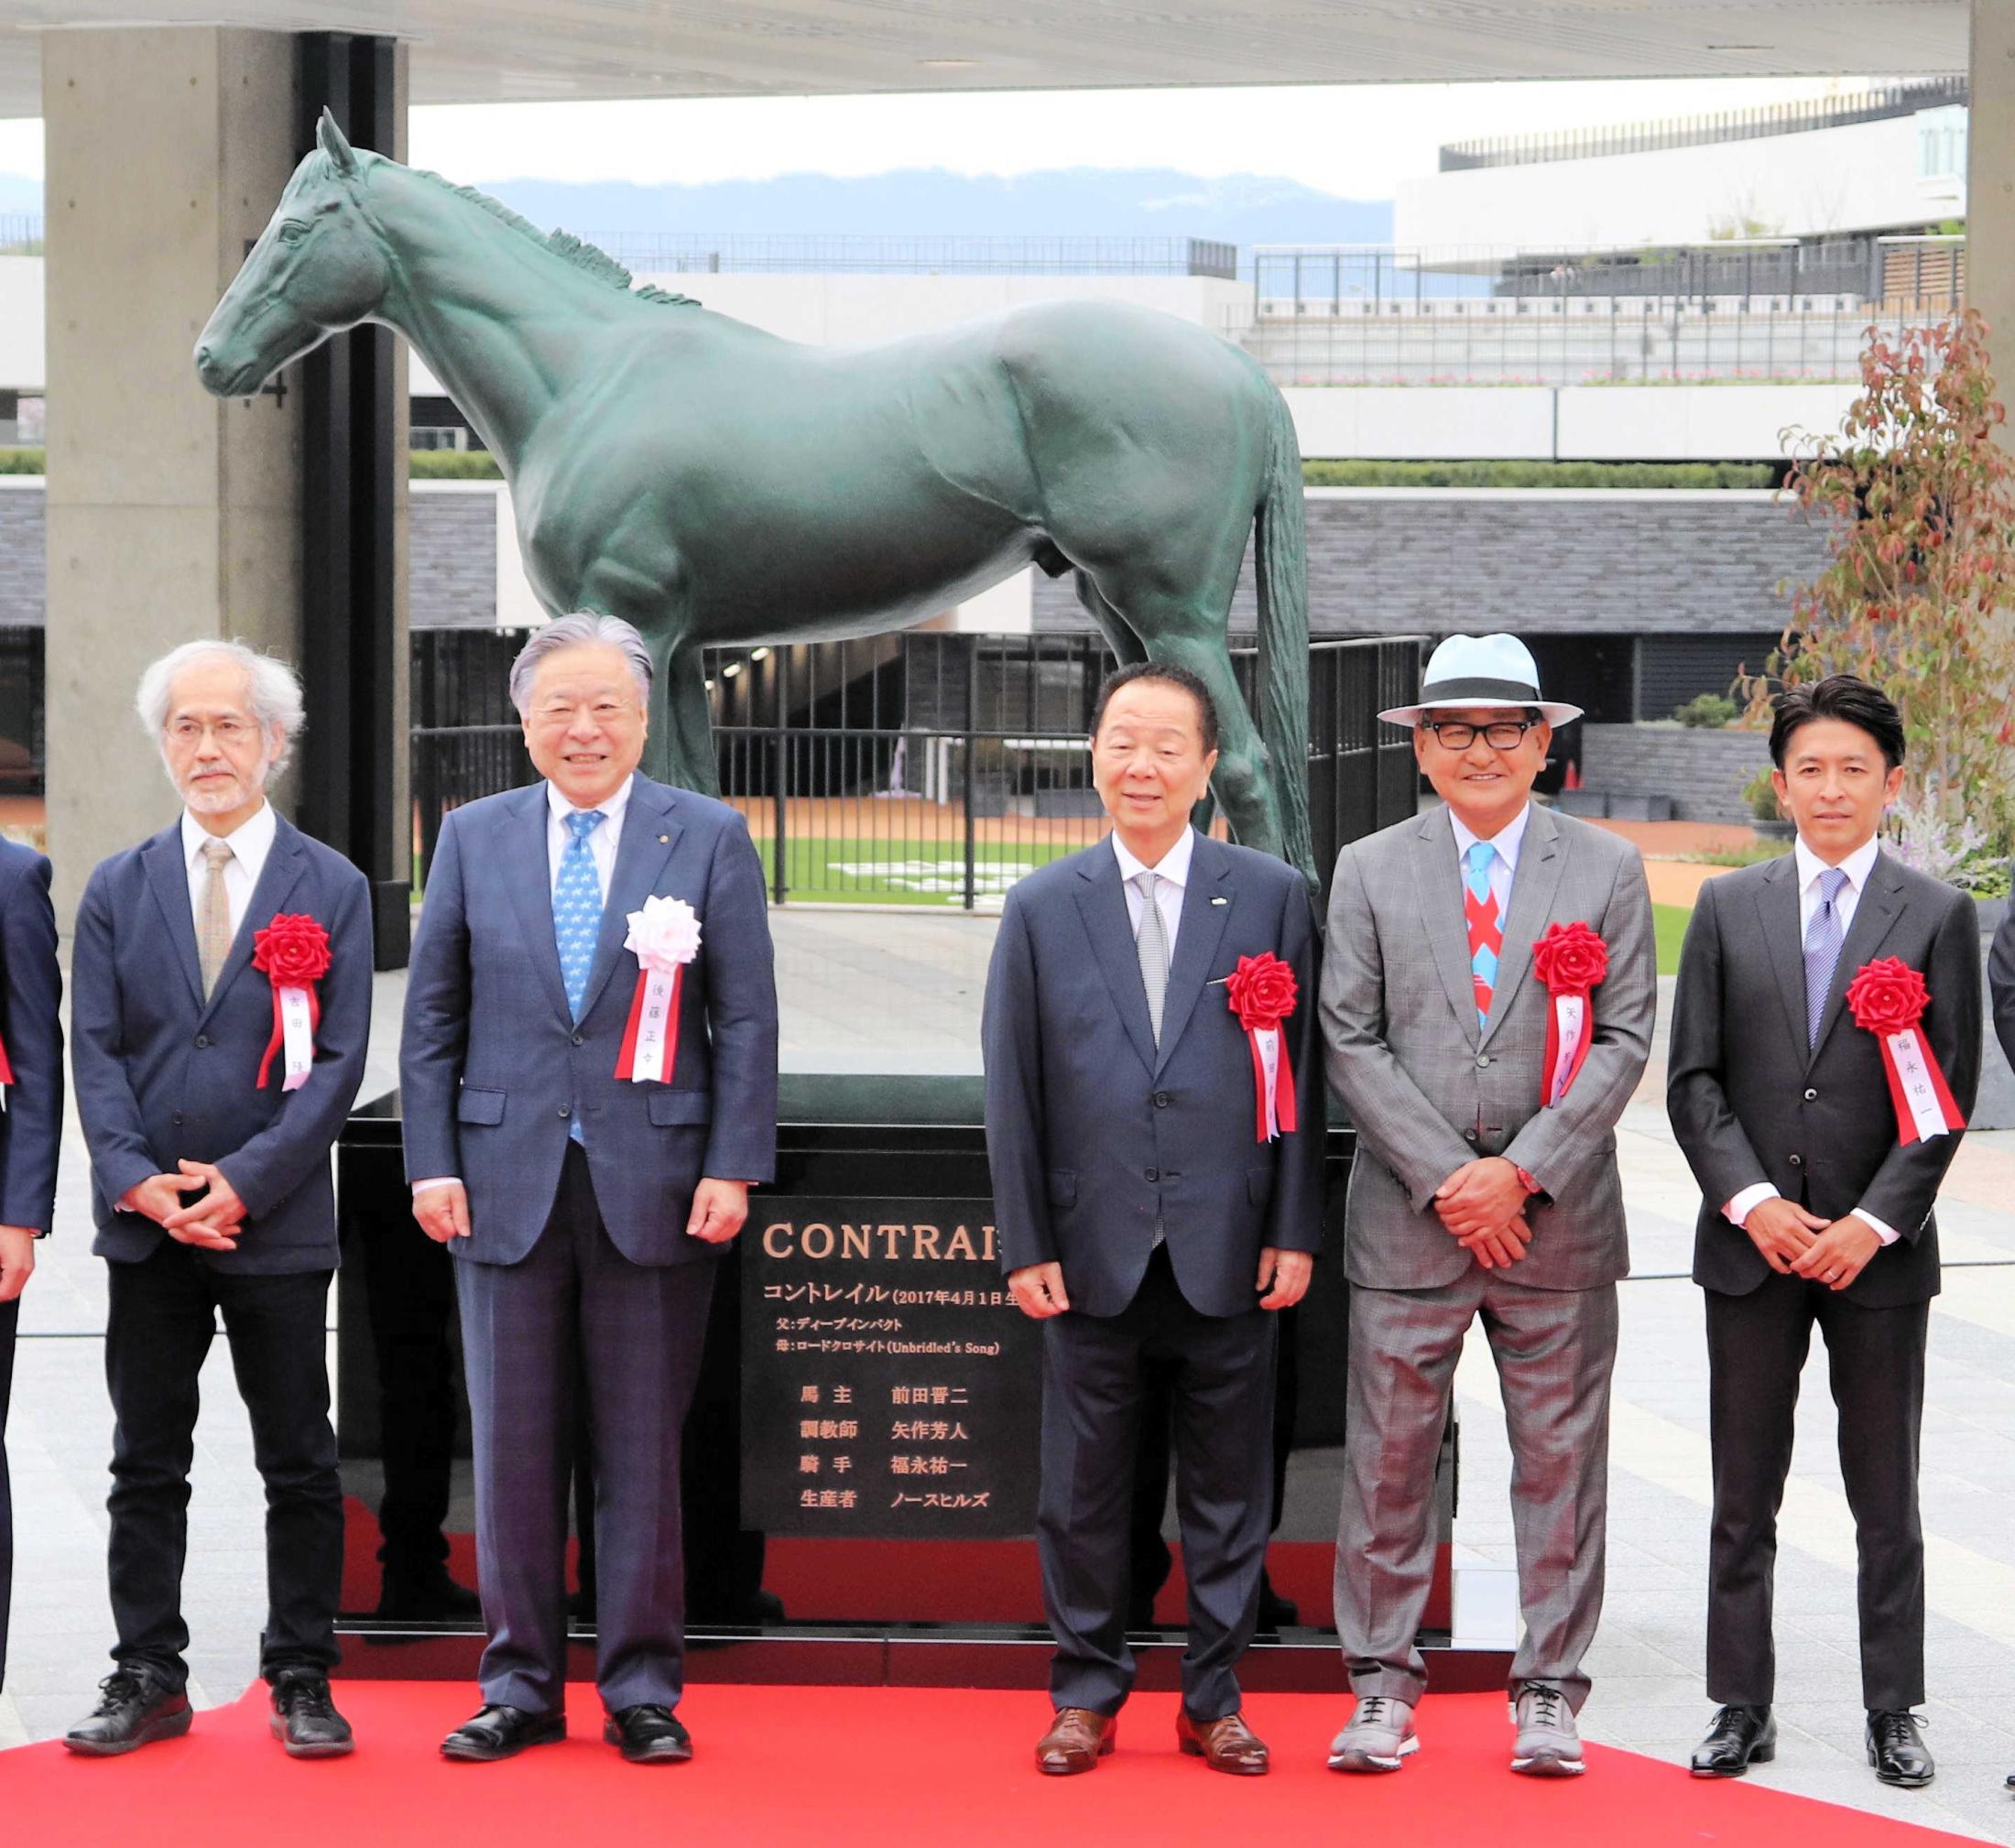 京都競馬場でコントレイル馬像除幕式 矢作師「リアル」 ２５年産駒